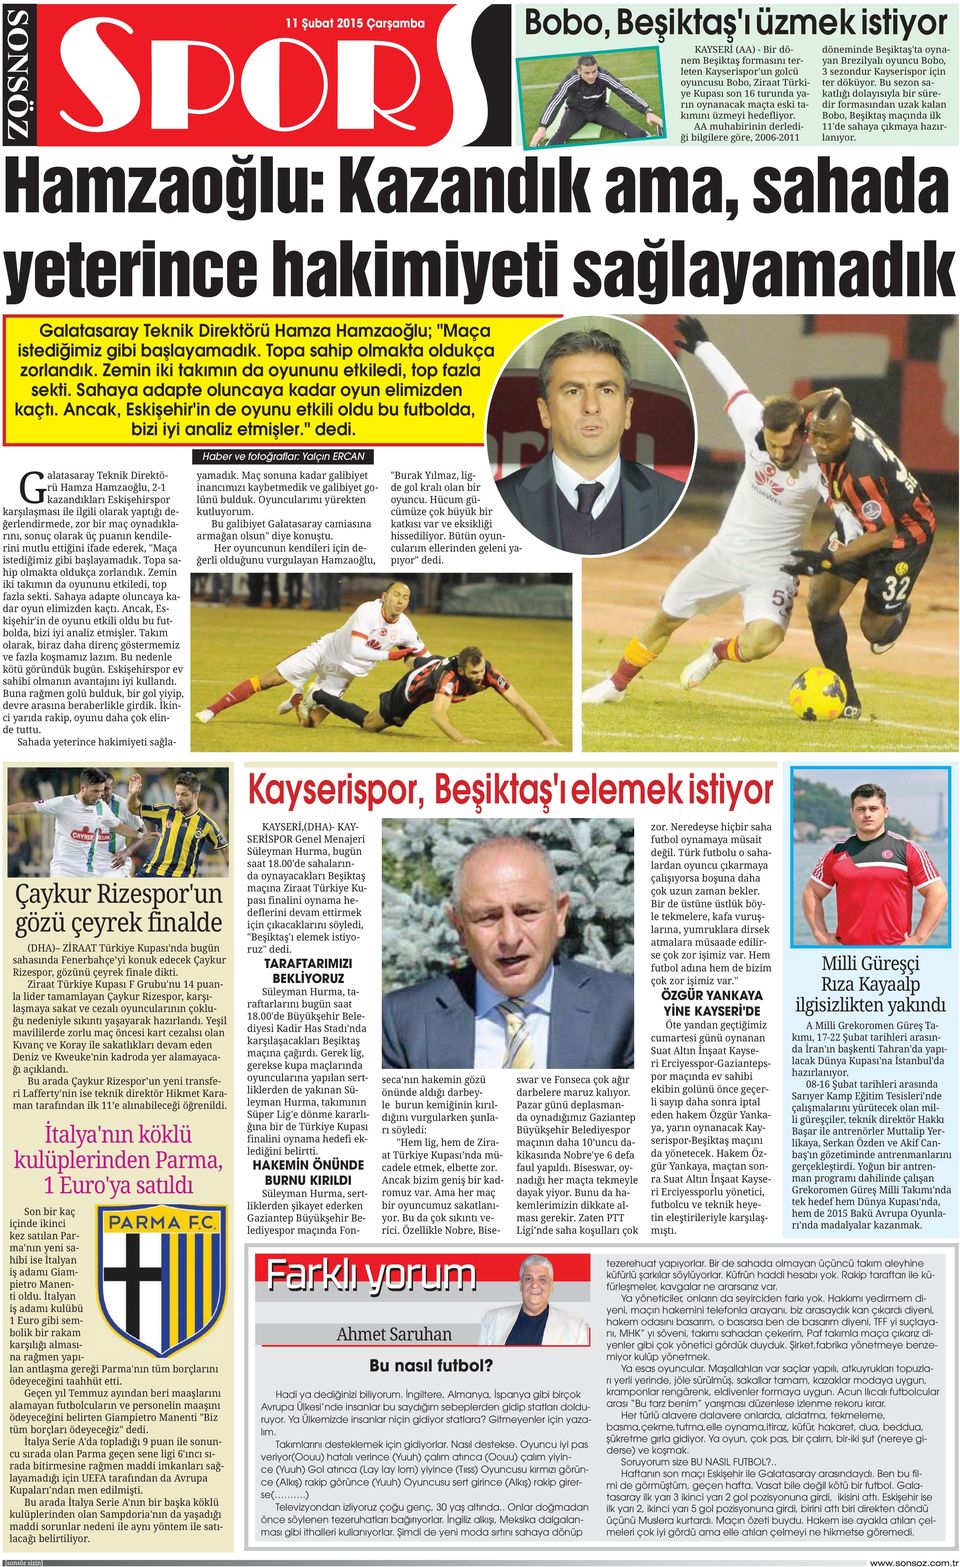 Haber ve fotoğraflar: Yalçın ERCAN G Kayserispor, Beşiktaş'ı elemek istiyor TARAFTARIMIZI BEKLİYORUZ HAKEMİN ÖNÜNDE BURNU KIRILDI Bu nasıl futbol? Hadi ya dediğinizi biliyorum.